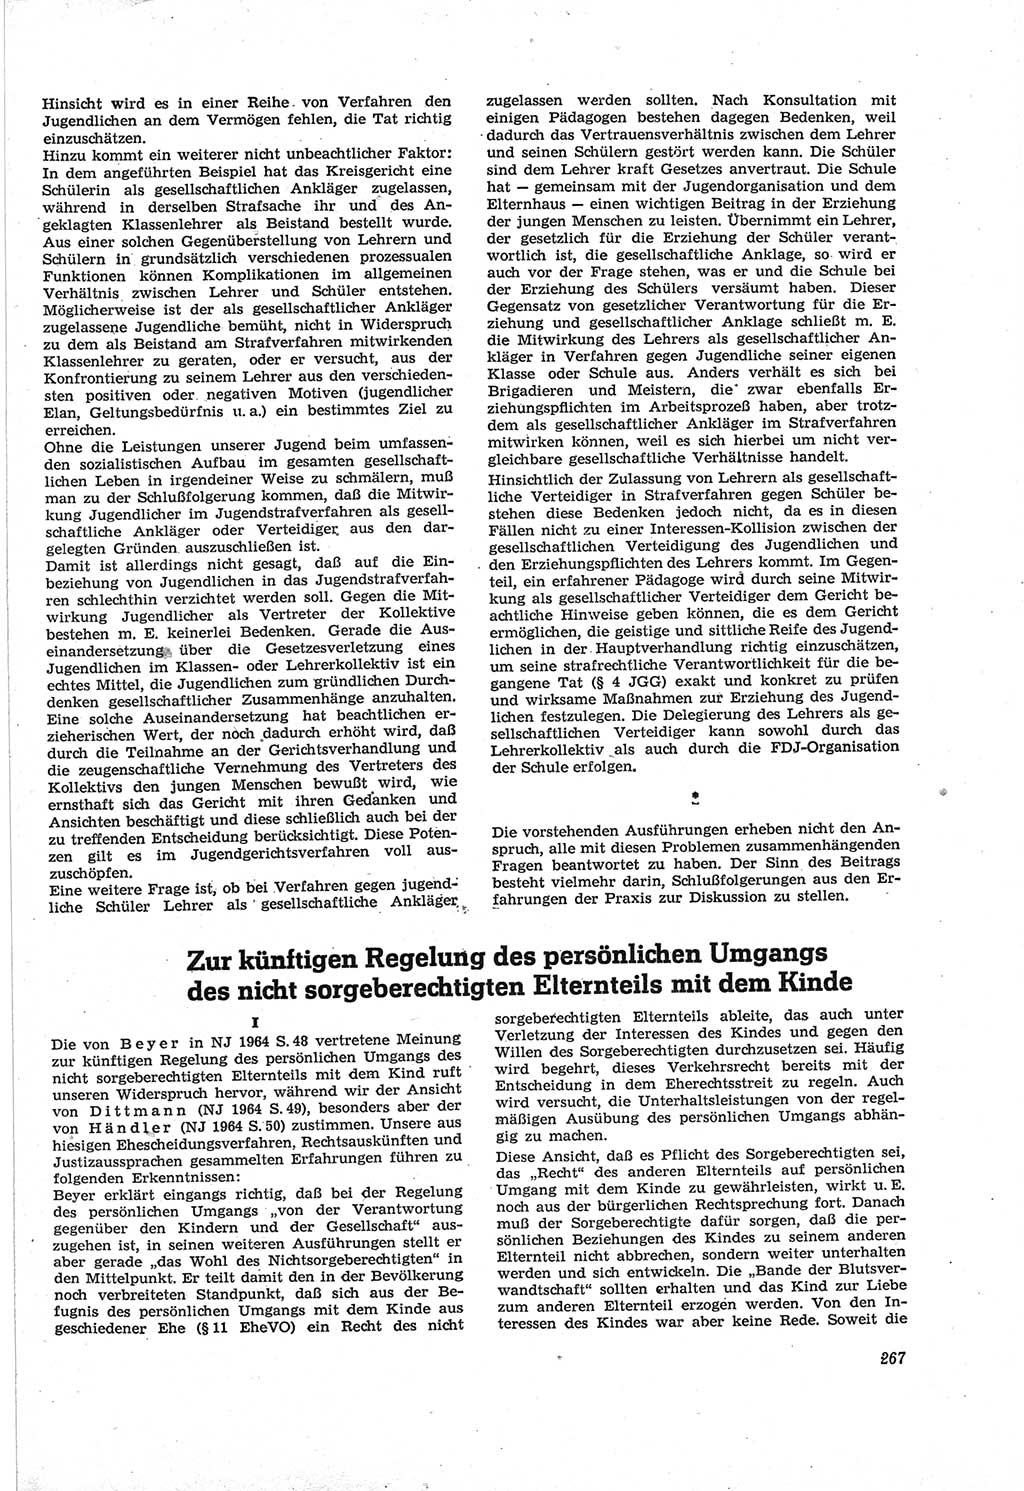 Neue Justiz (NJ), Zeitschrift für Recht und Rechtswissenschaft [Deutsche Demokratische Republik (DDR)], 18. Jahrgang 1964, Seite 267 (NJ DDR 1964, S. 267)